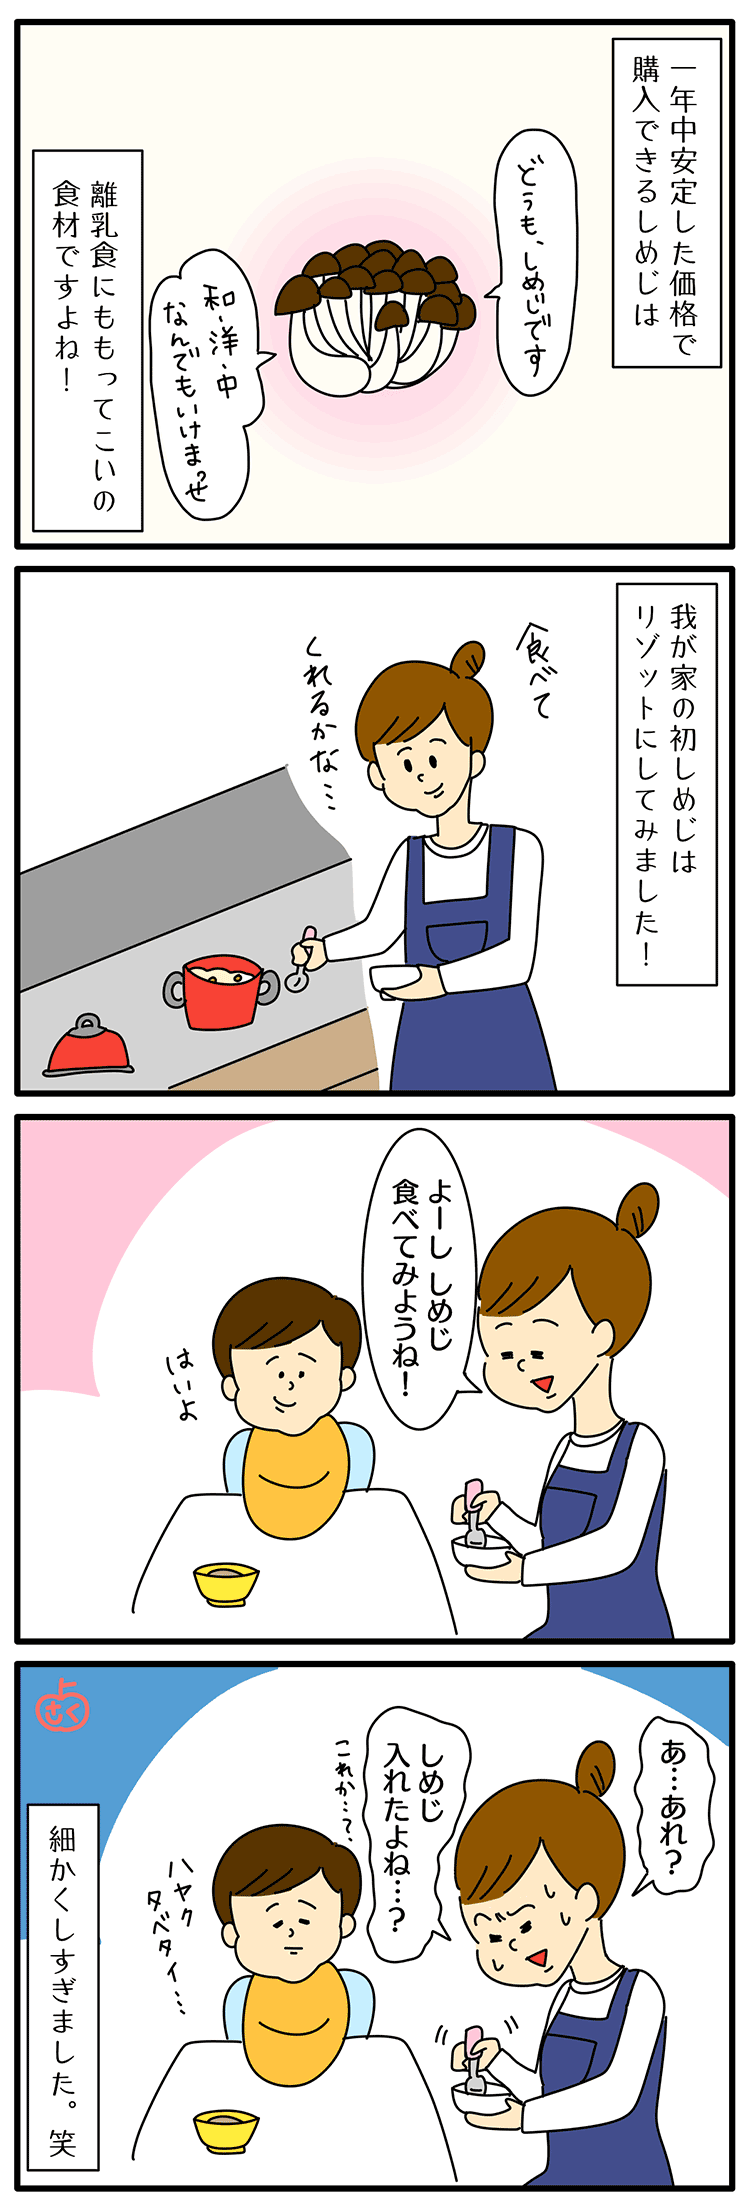 離乳食のしめじについての永岡さくら（saku）さんの子育て4コマ漫画